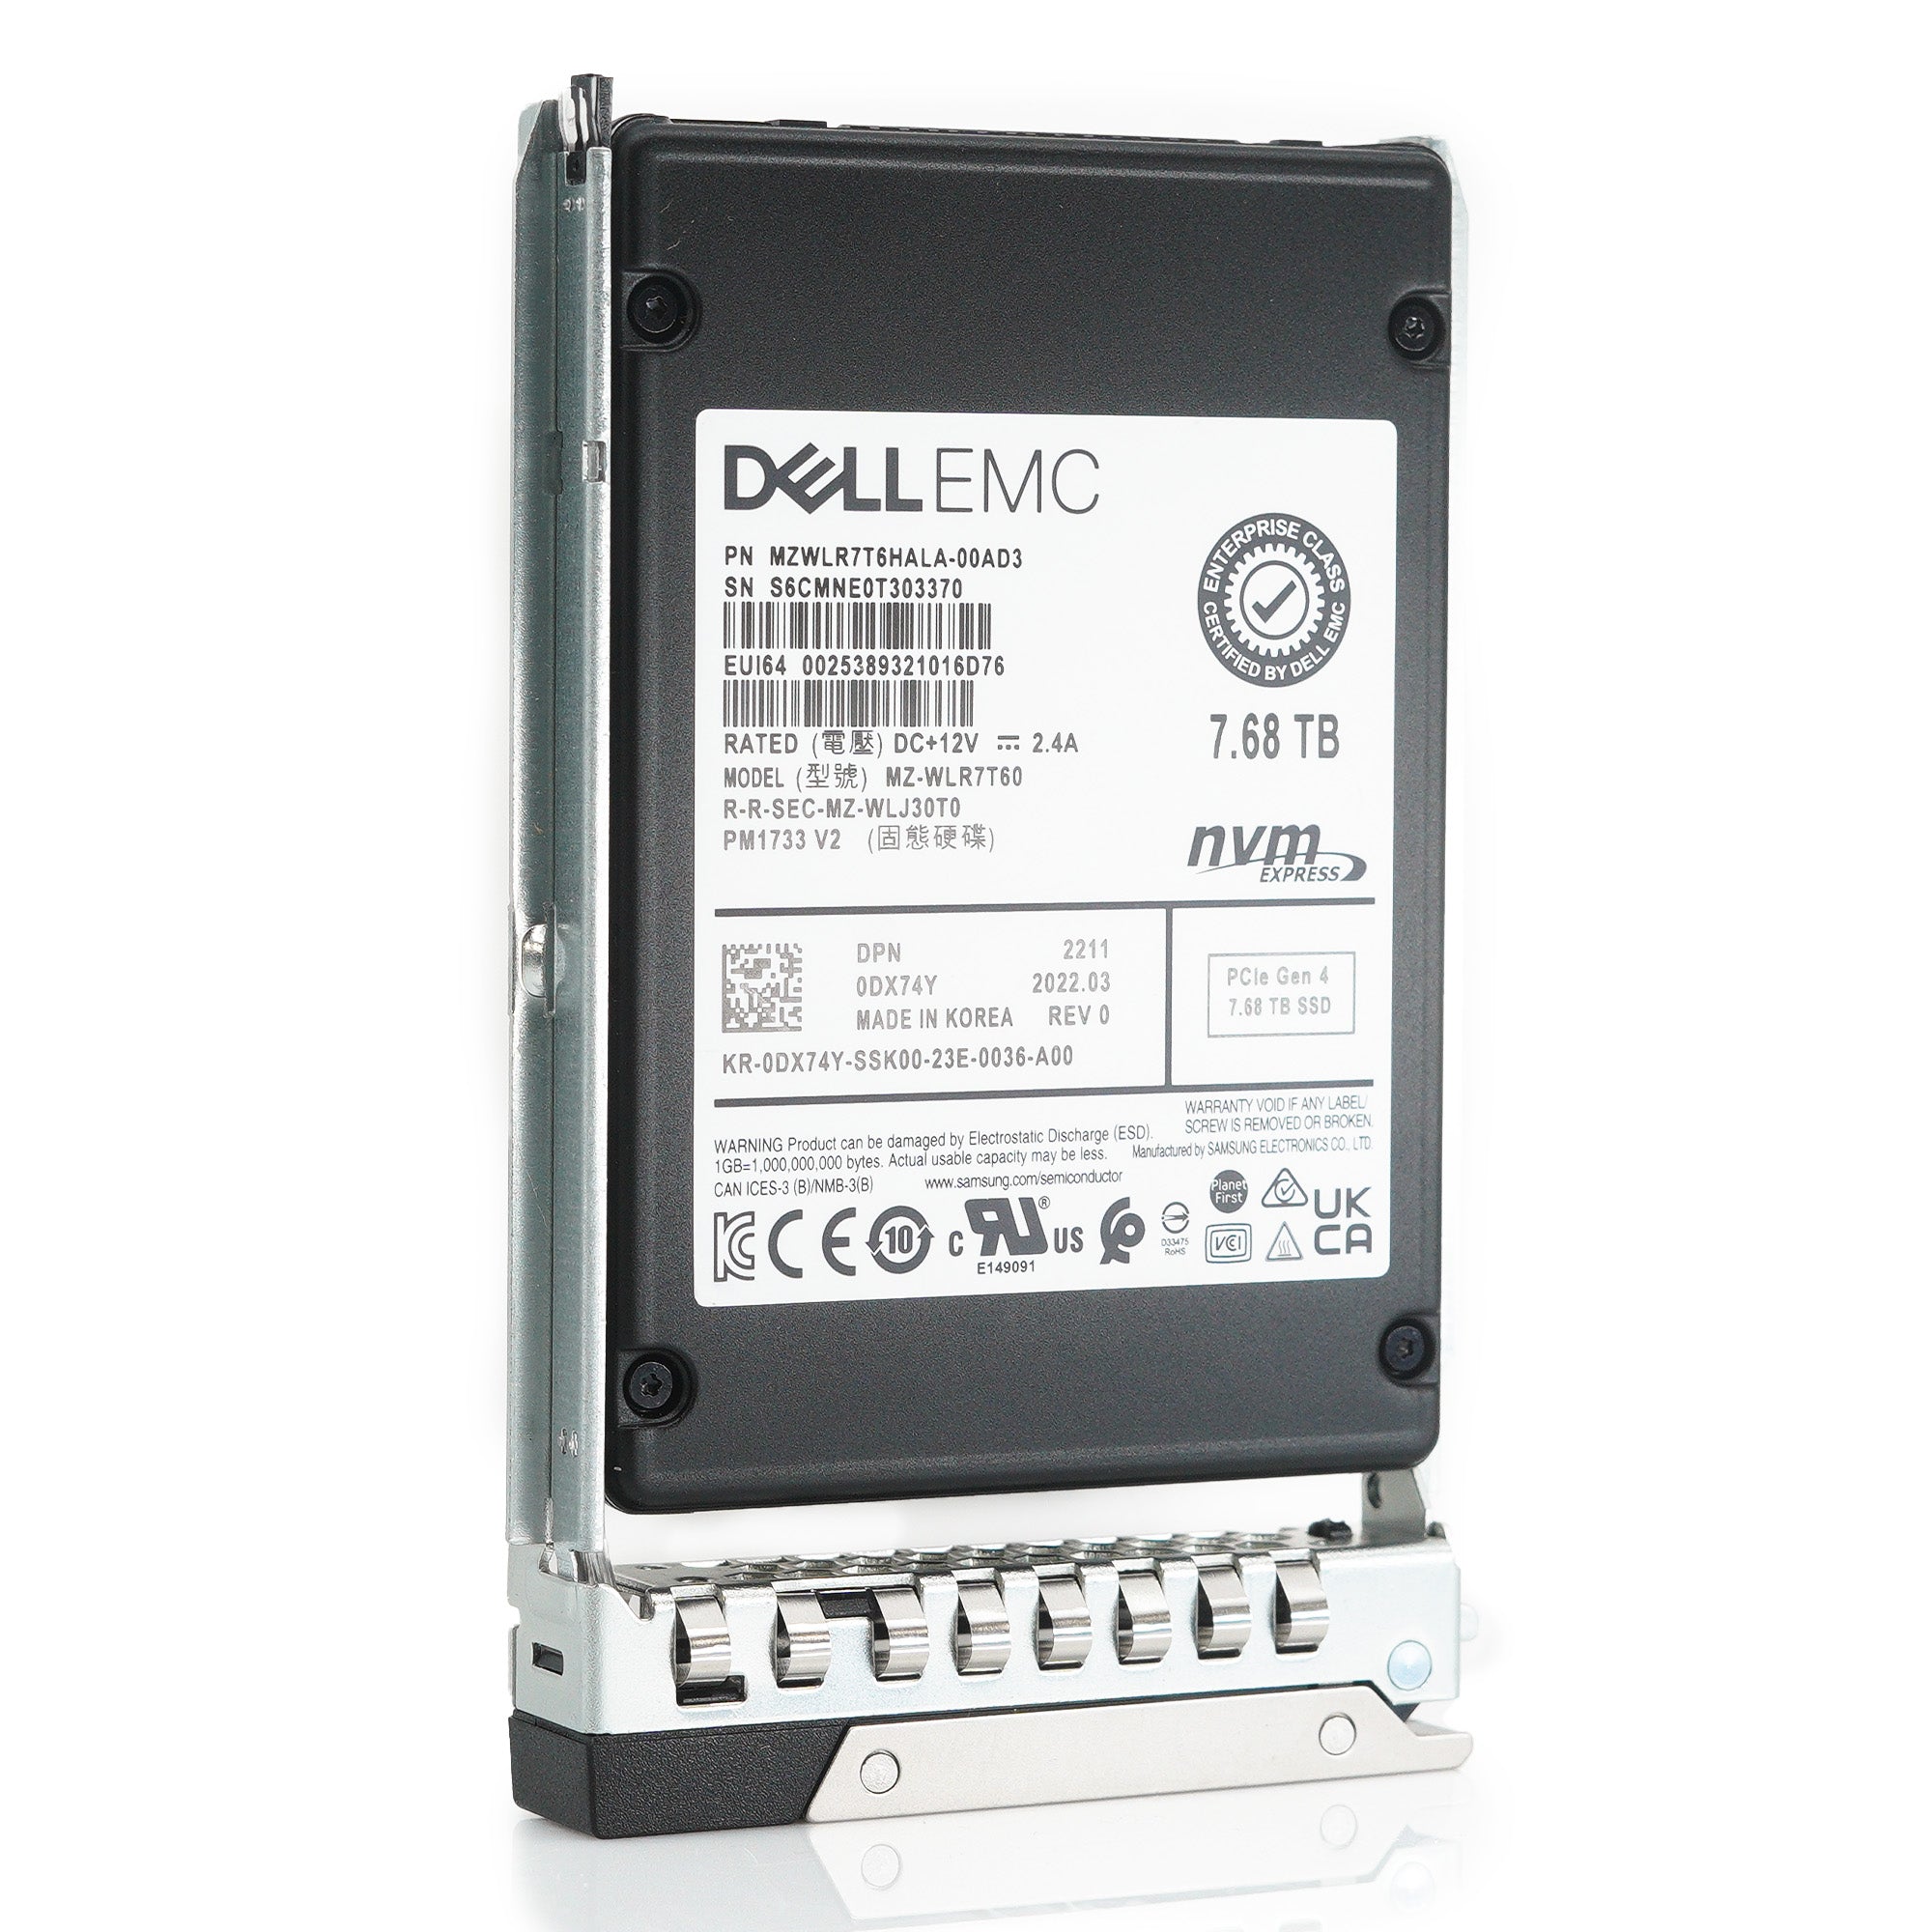 Dell G14 DX74Y MZWLR7T6HALA 7.68TB PCIe Gen 4.0 x4 8GB/s 3D TLC 1DWPD Read Intensive U.2 2.5in Refurbished SSD